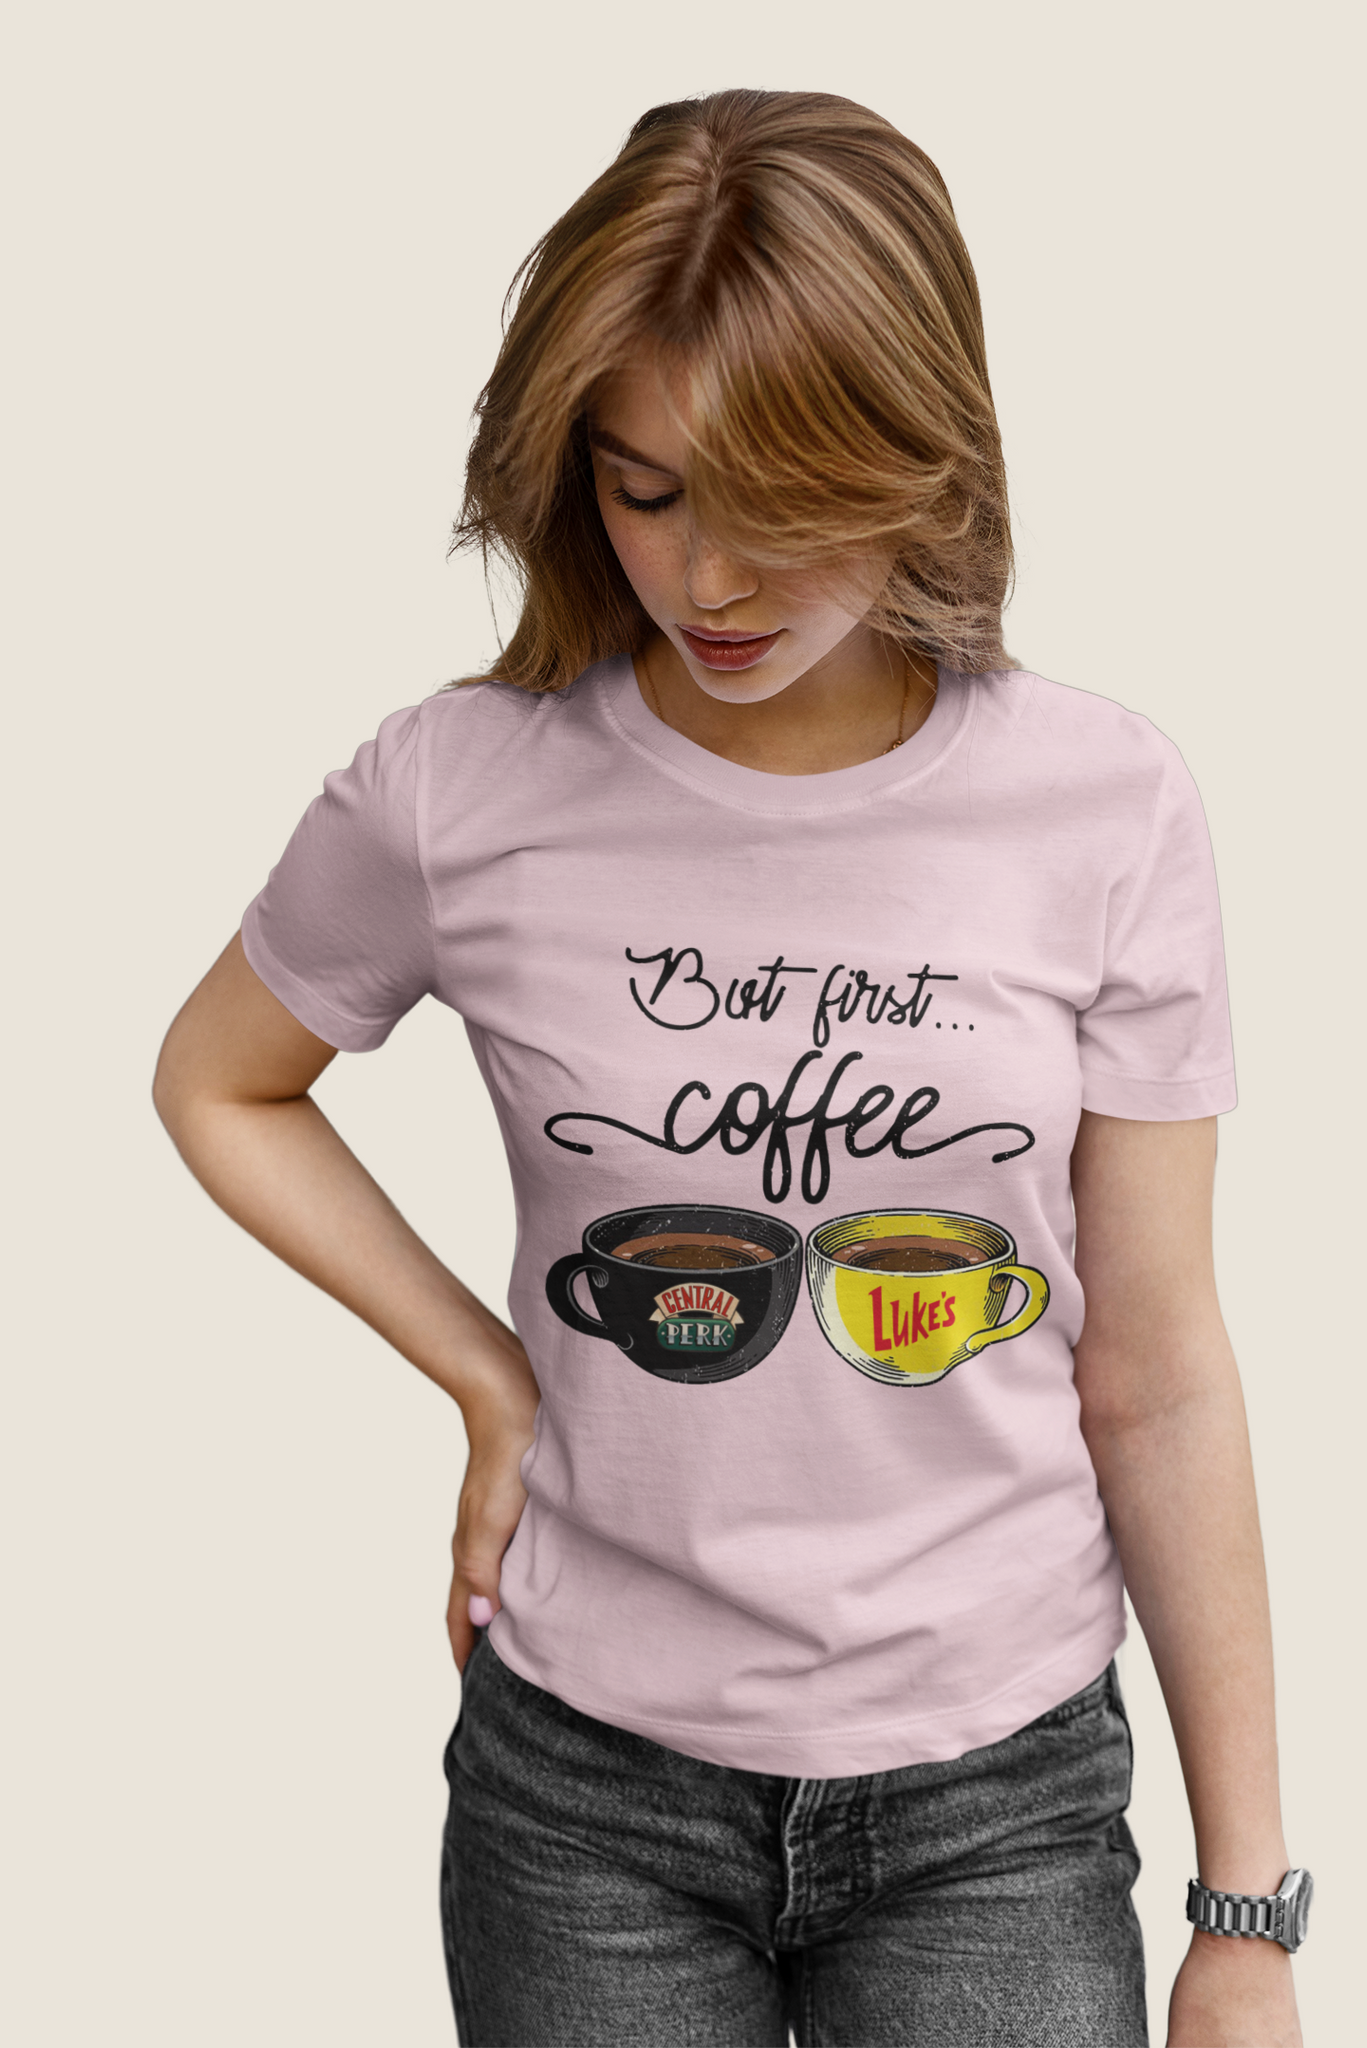 Friends TV Show T Shirt, Friends Shirt, Central Perk Lukes Coffee T Shirt, But First Coffee Tshirt